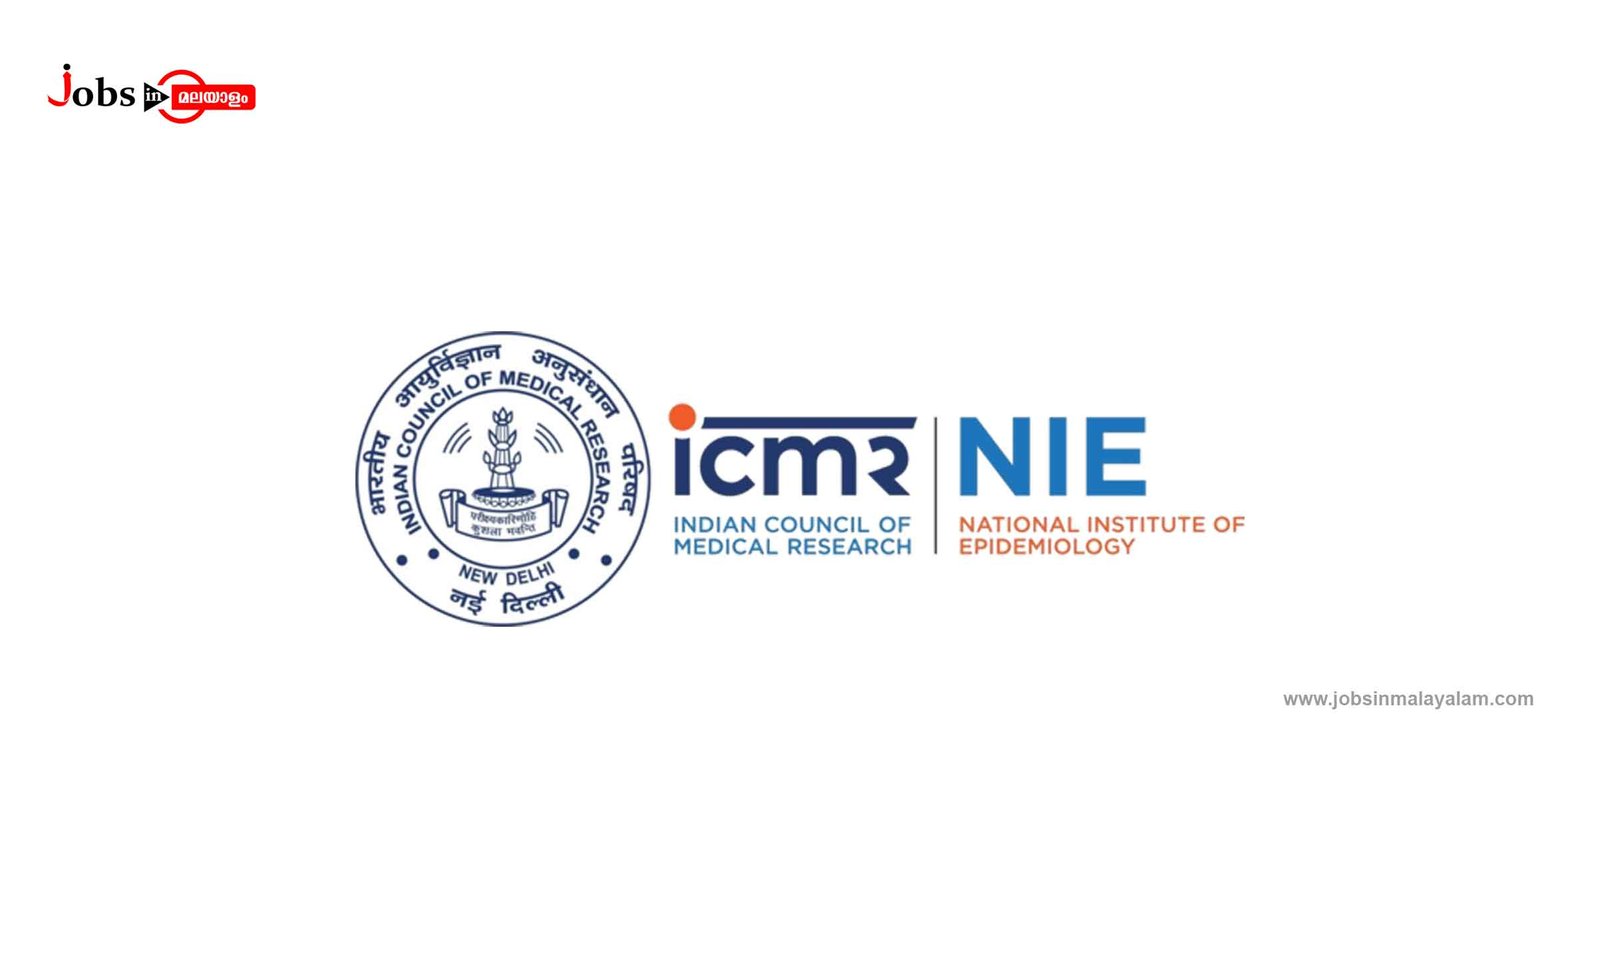 ICMR-NATIONAL INSTITUTE OF EPIDEMIOLOGY